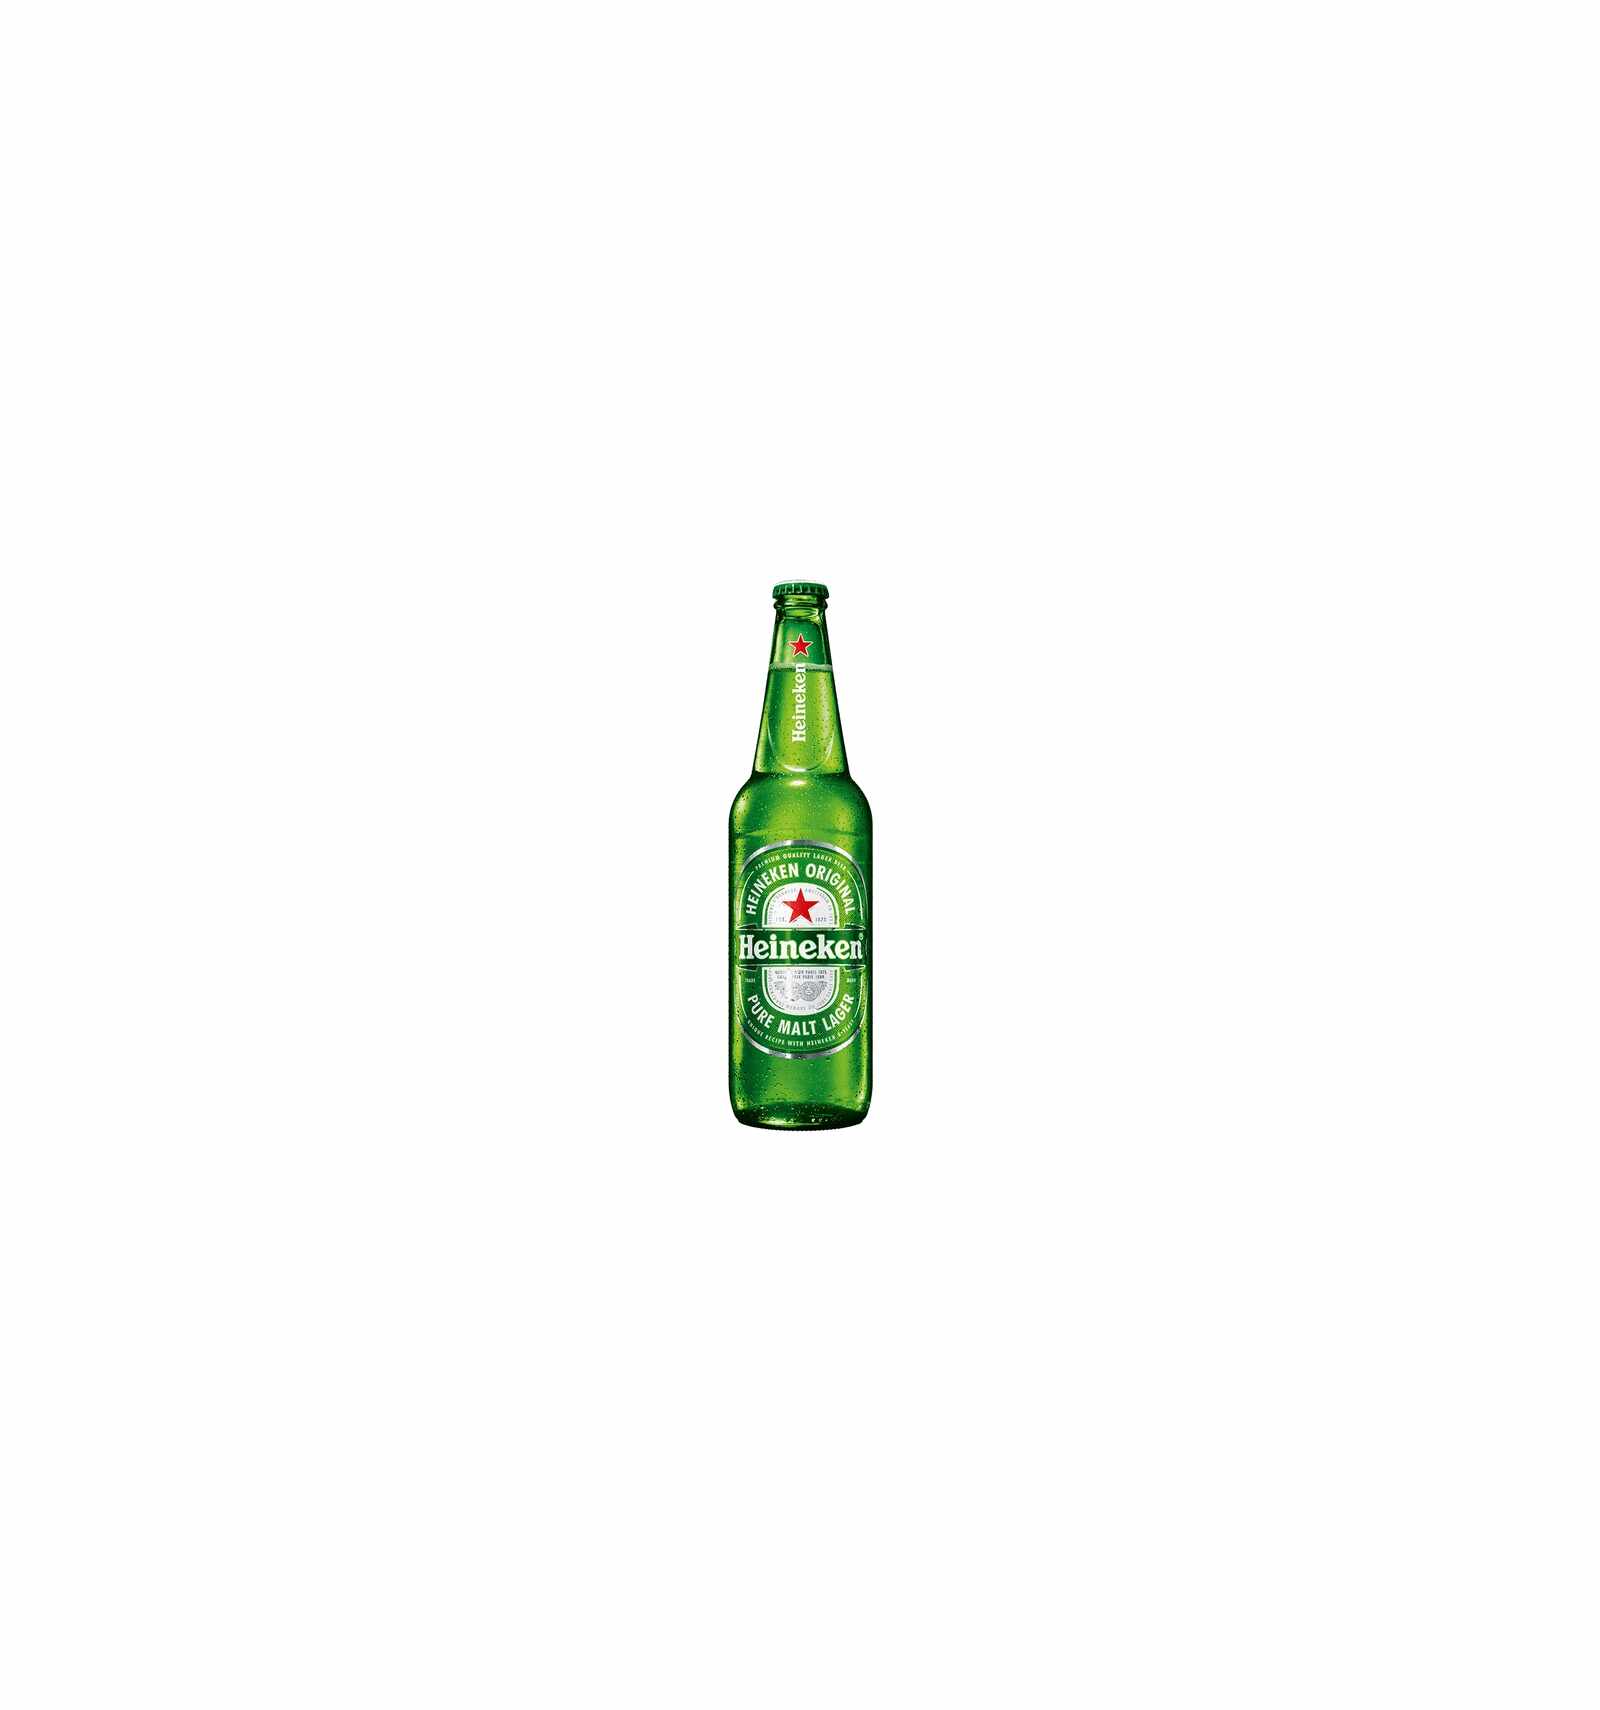 Bere blonda, filtrata Heineken Premium, 5% alc., 0.66L, Rusia